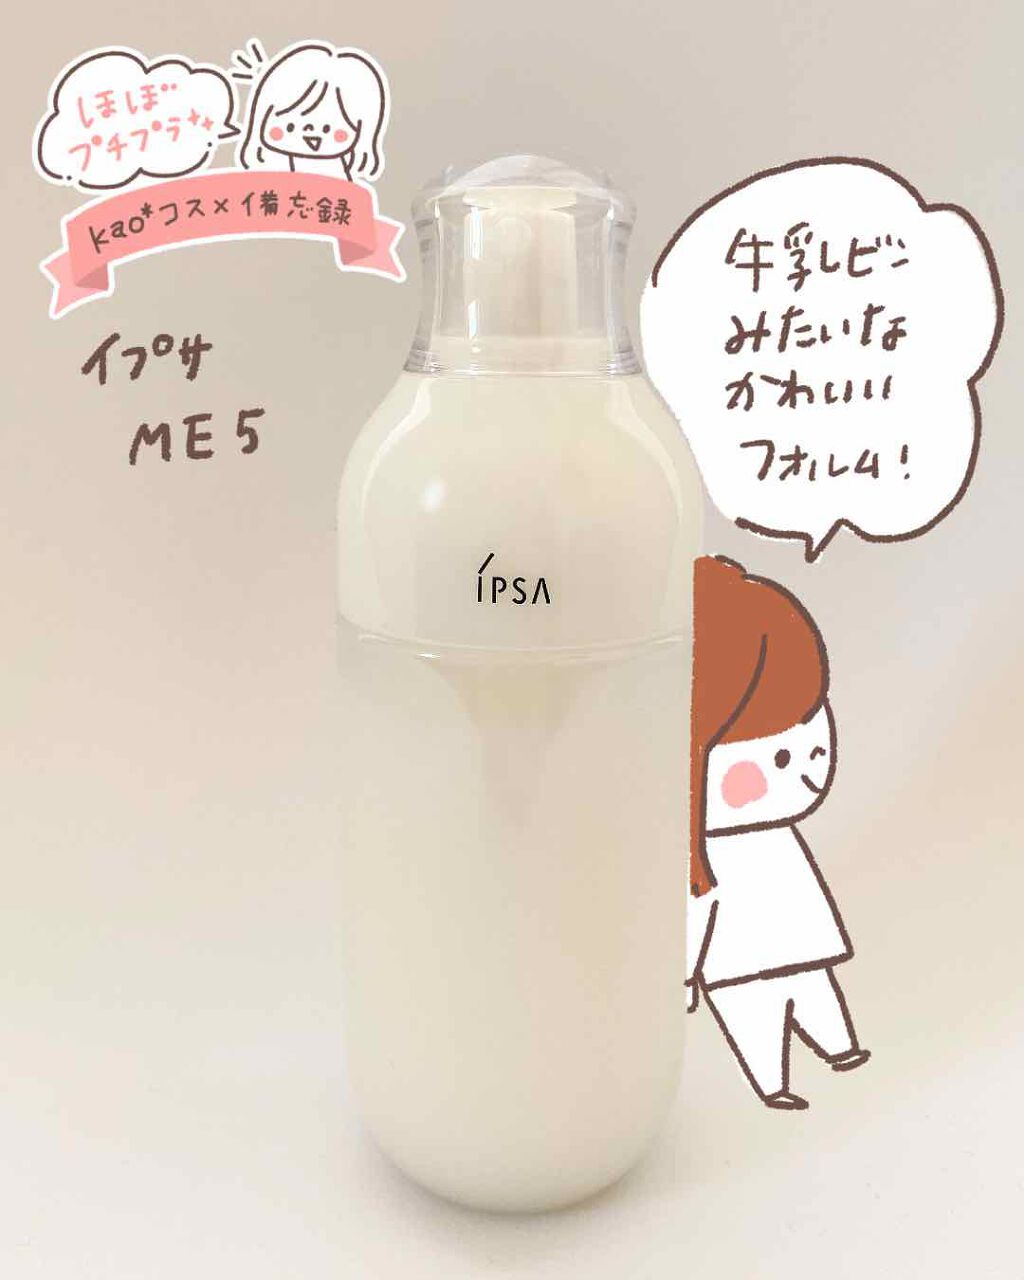 イプサ iPSA ME5 メタボライザー 限定品 - 乳液・ミルク